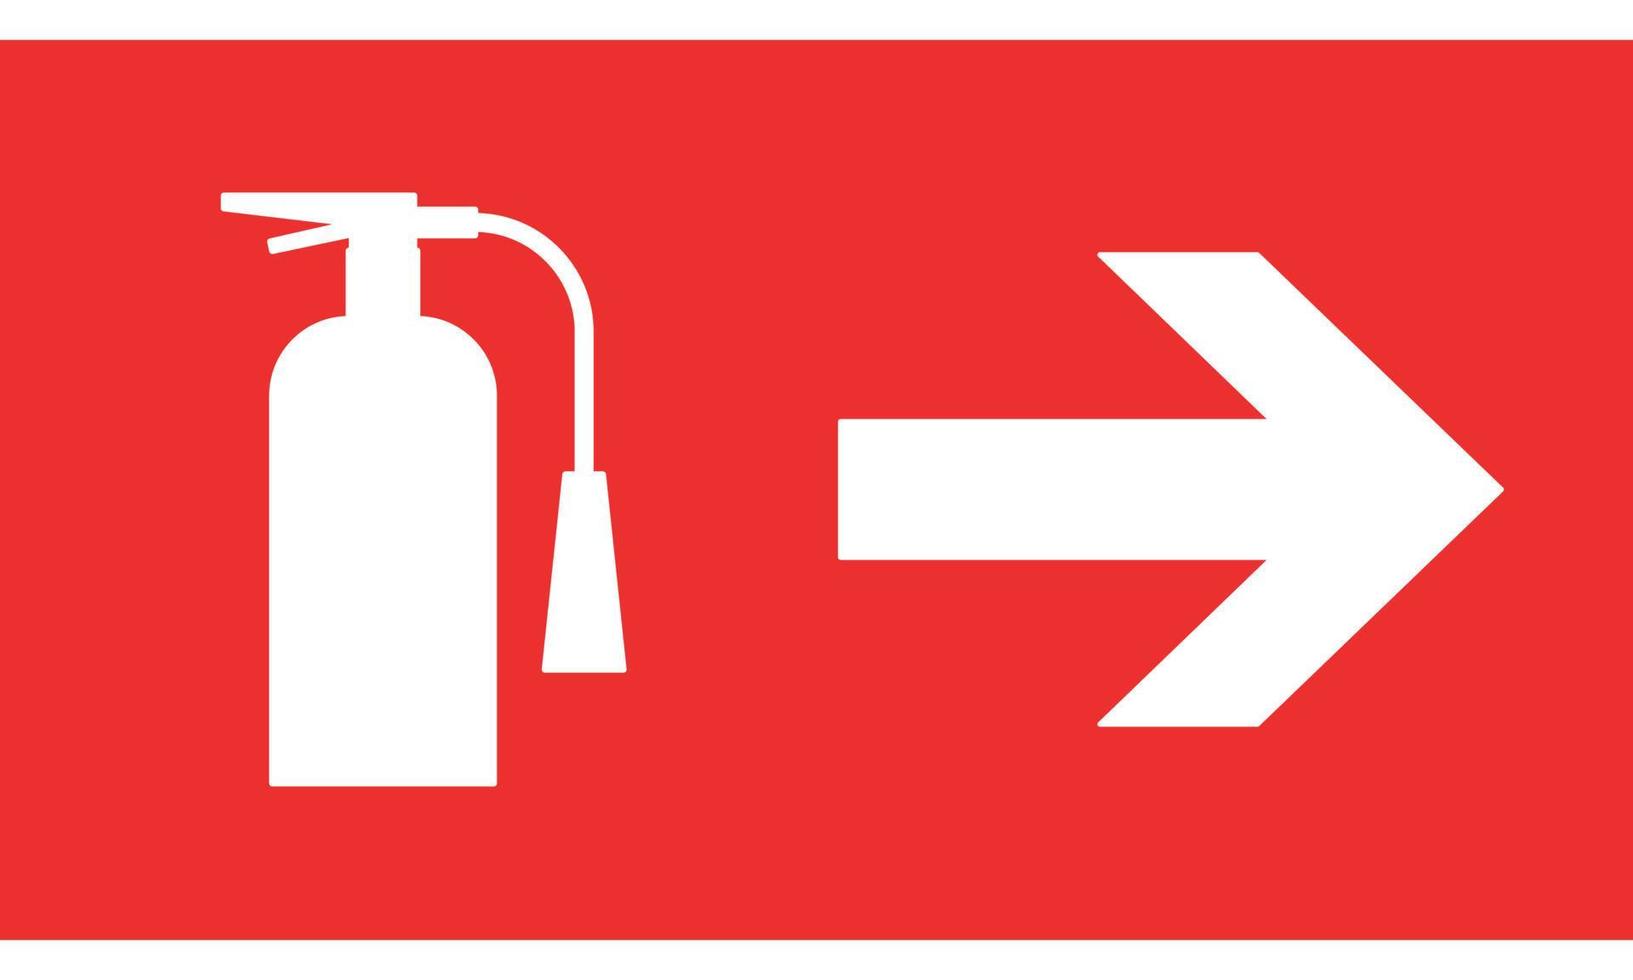 direção de extintor de incêndio de sinal informativo à direita. seta. ilustração vetorial em fundo vermelho vetor